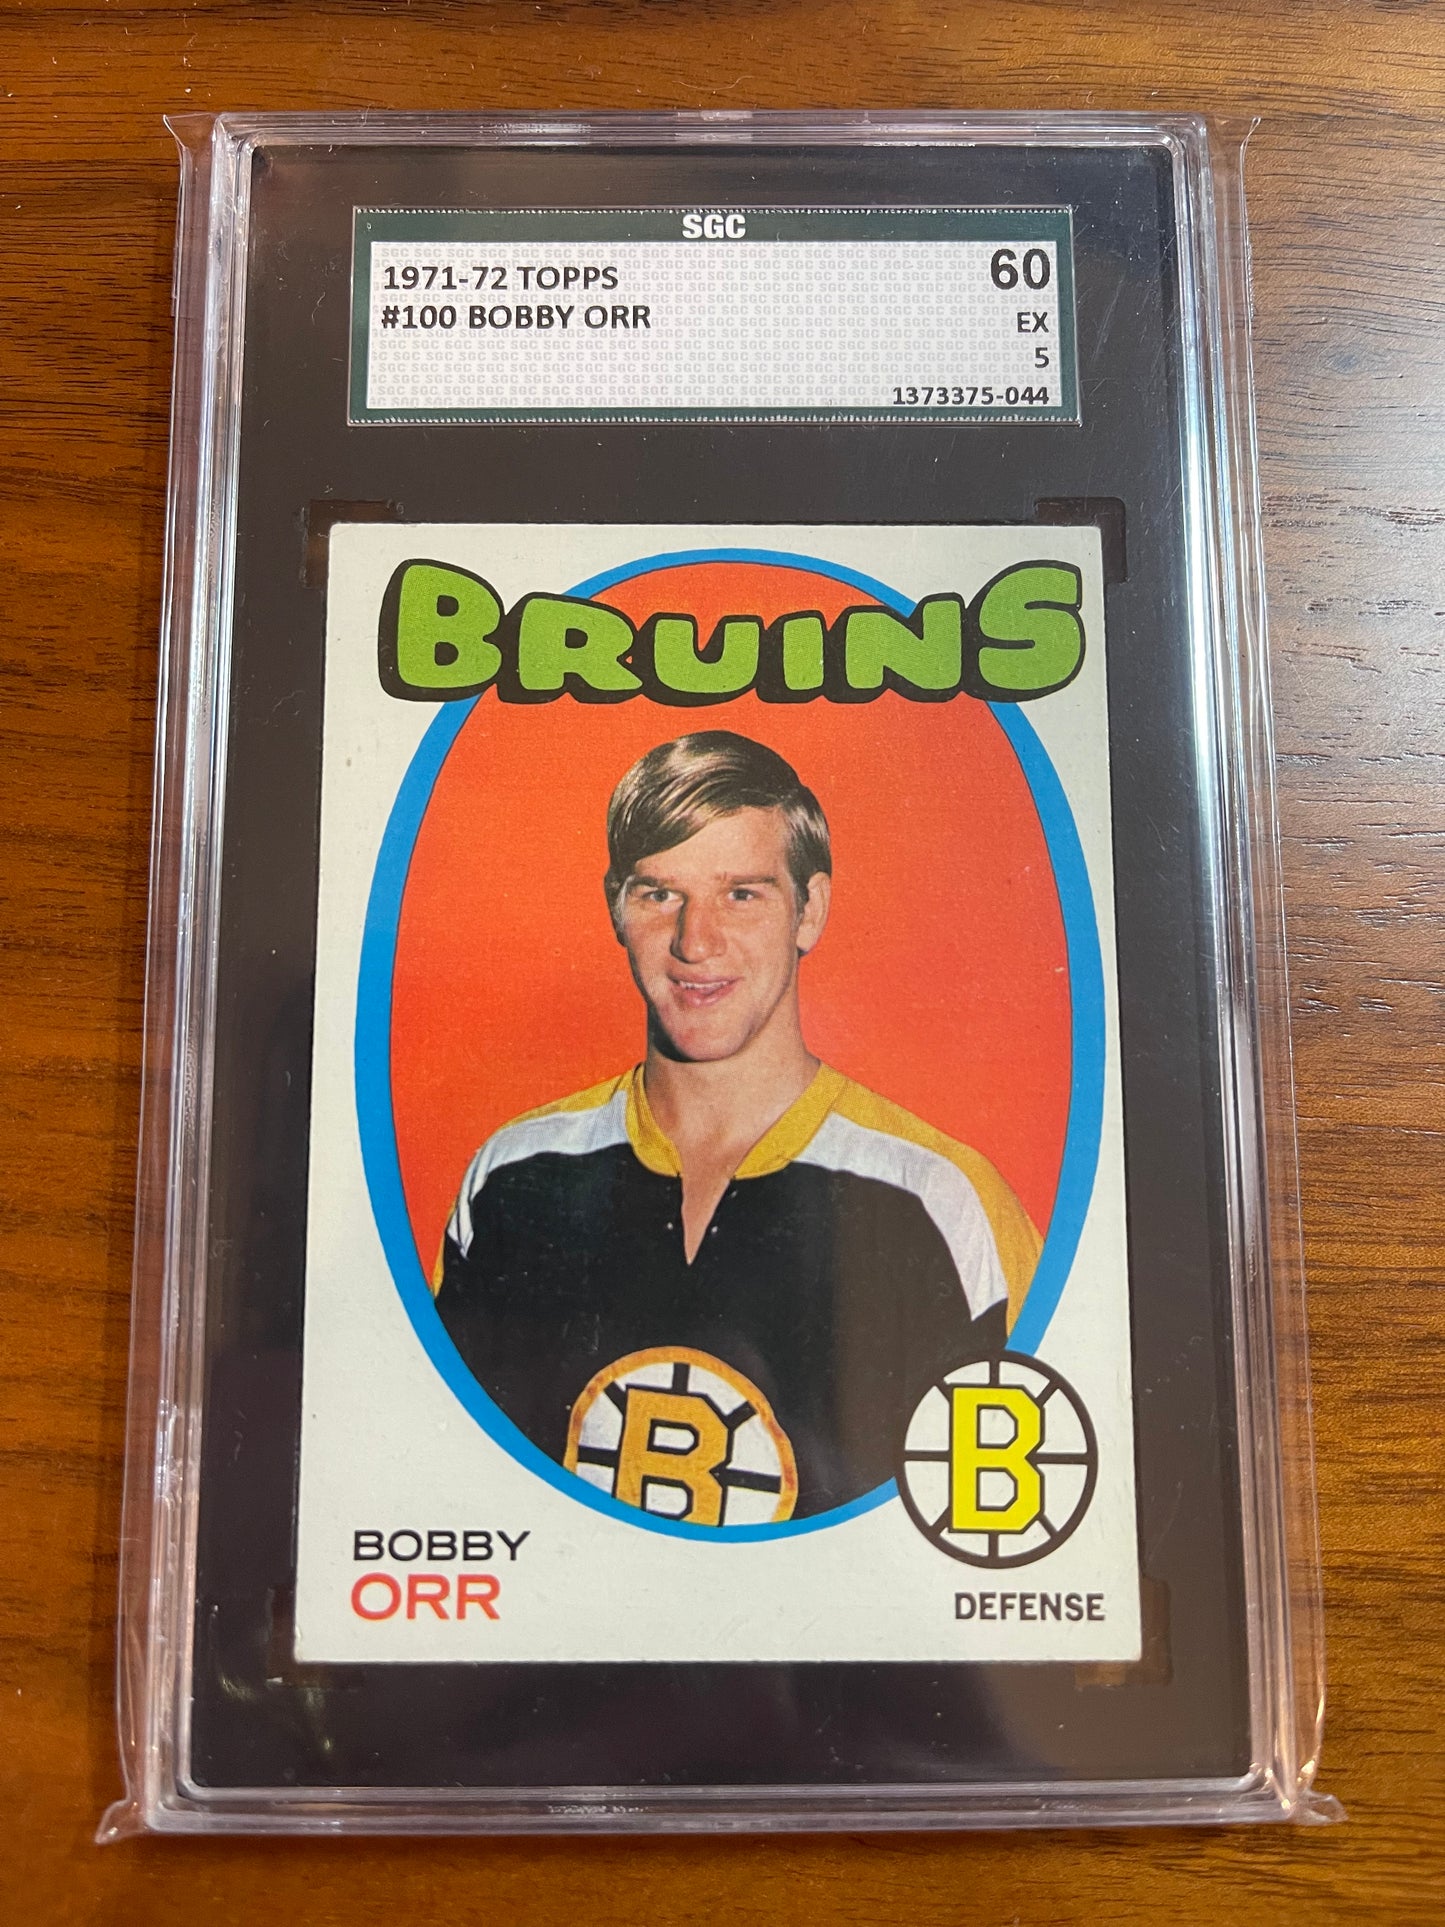 BOBBY ORR - 1971 Topps #100, SGC 5 (60)